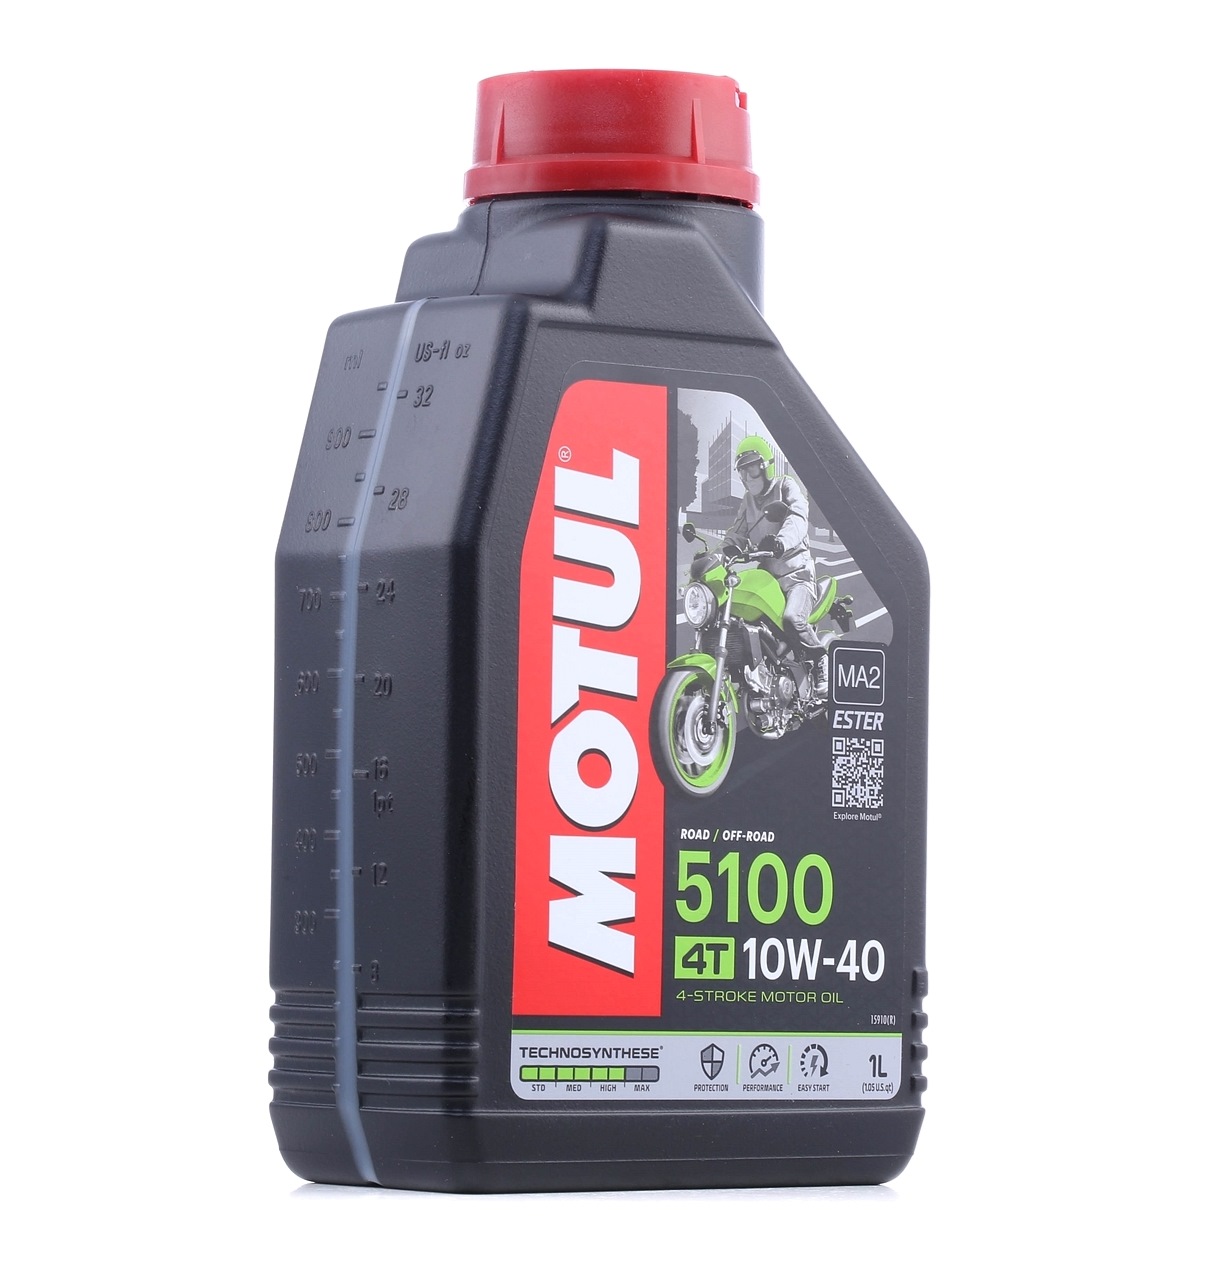 Acquisto Olio per motore MOTUL 104066 5100, 4T 10W-40, 1l